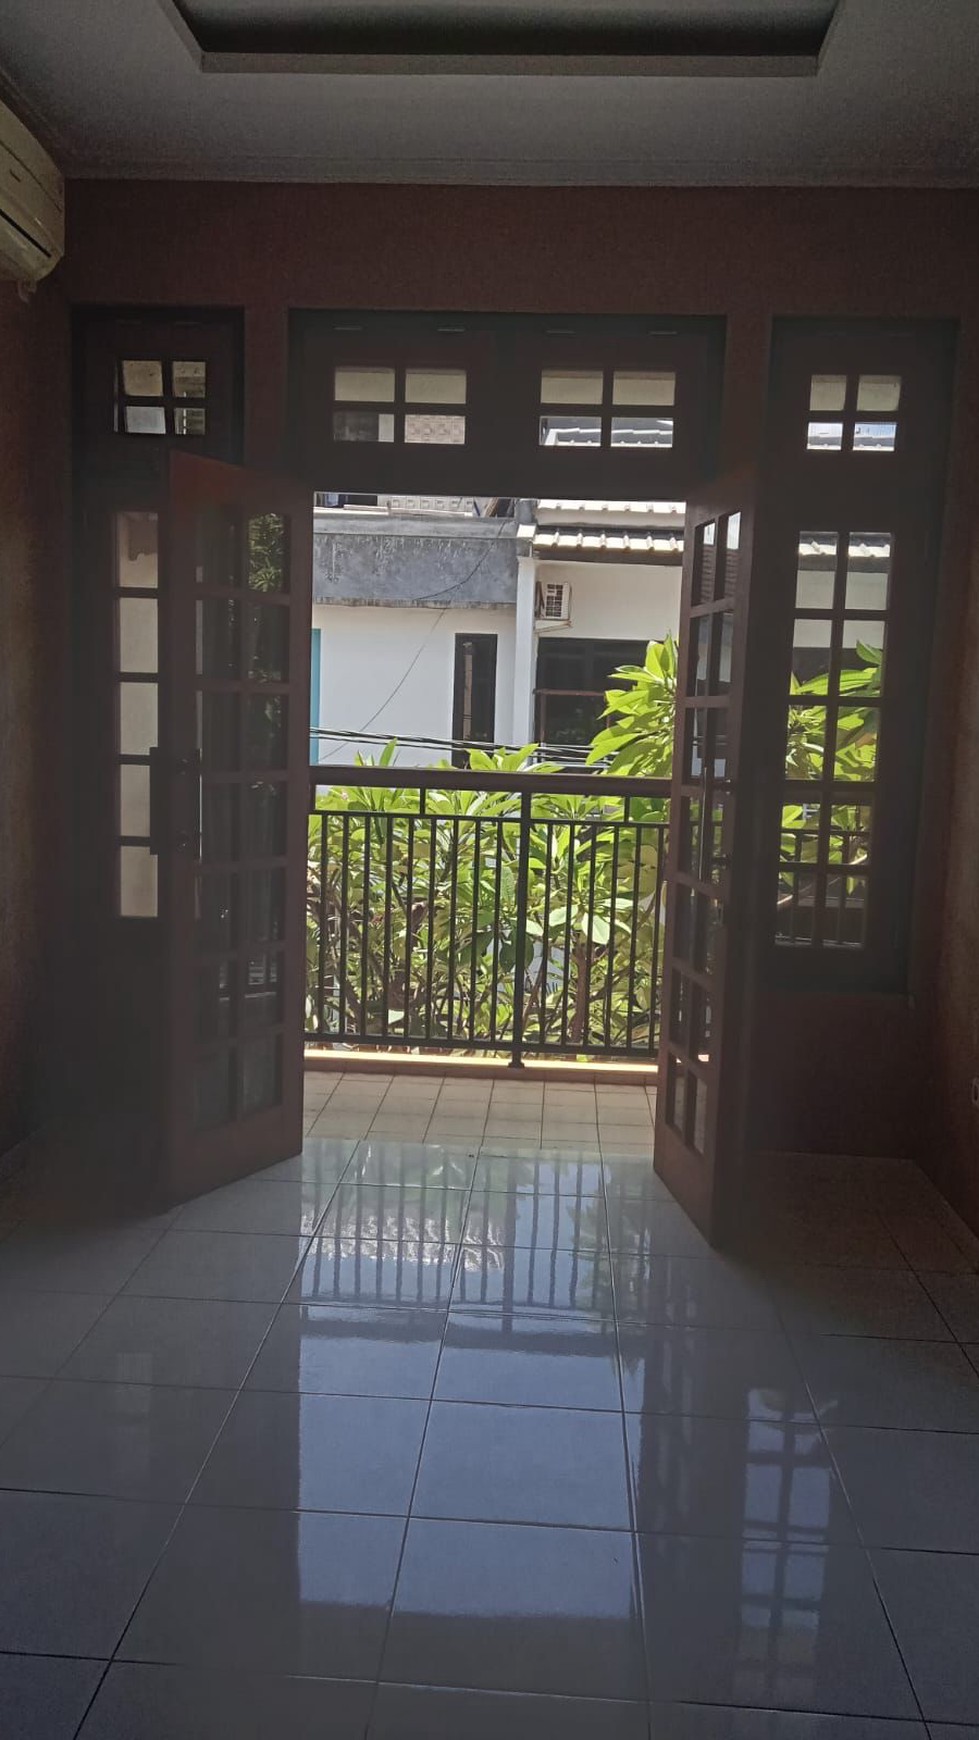 Rumah bagus, lingkungan aman dan nyaman di Graha Bintaro.